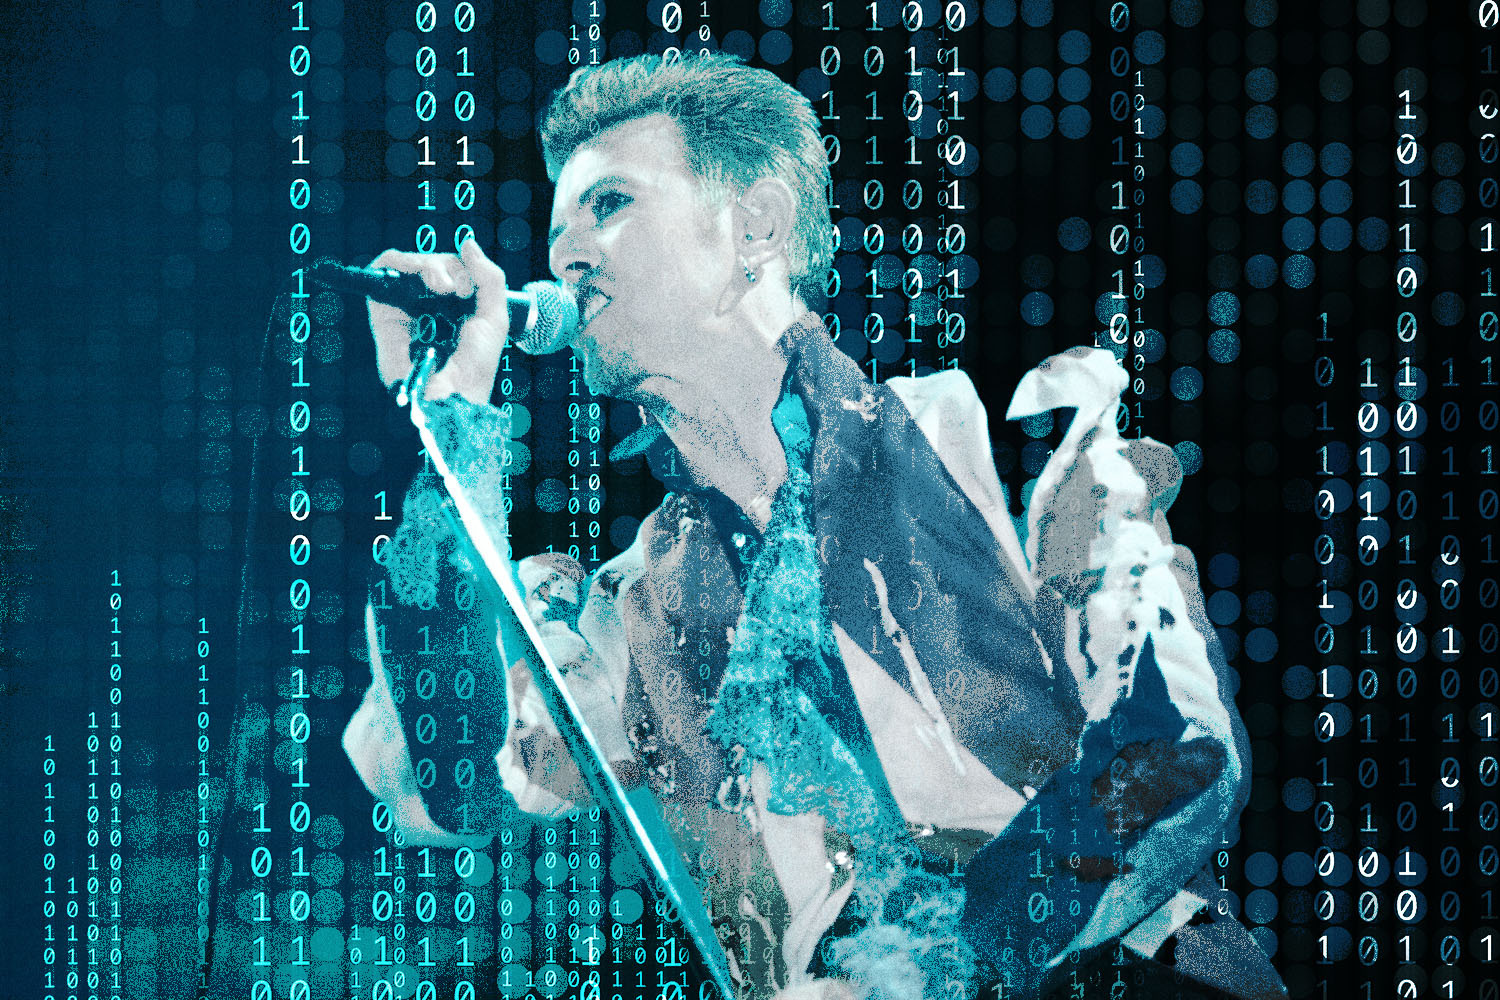 David Bowie fue el primer artista en permitir la descarga digital de una de sus canciones